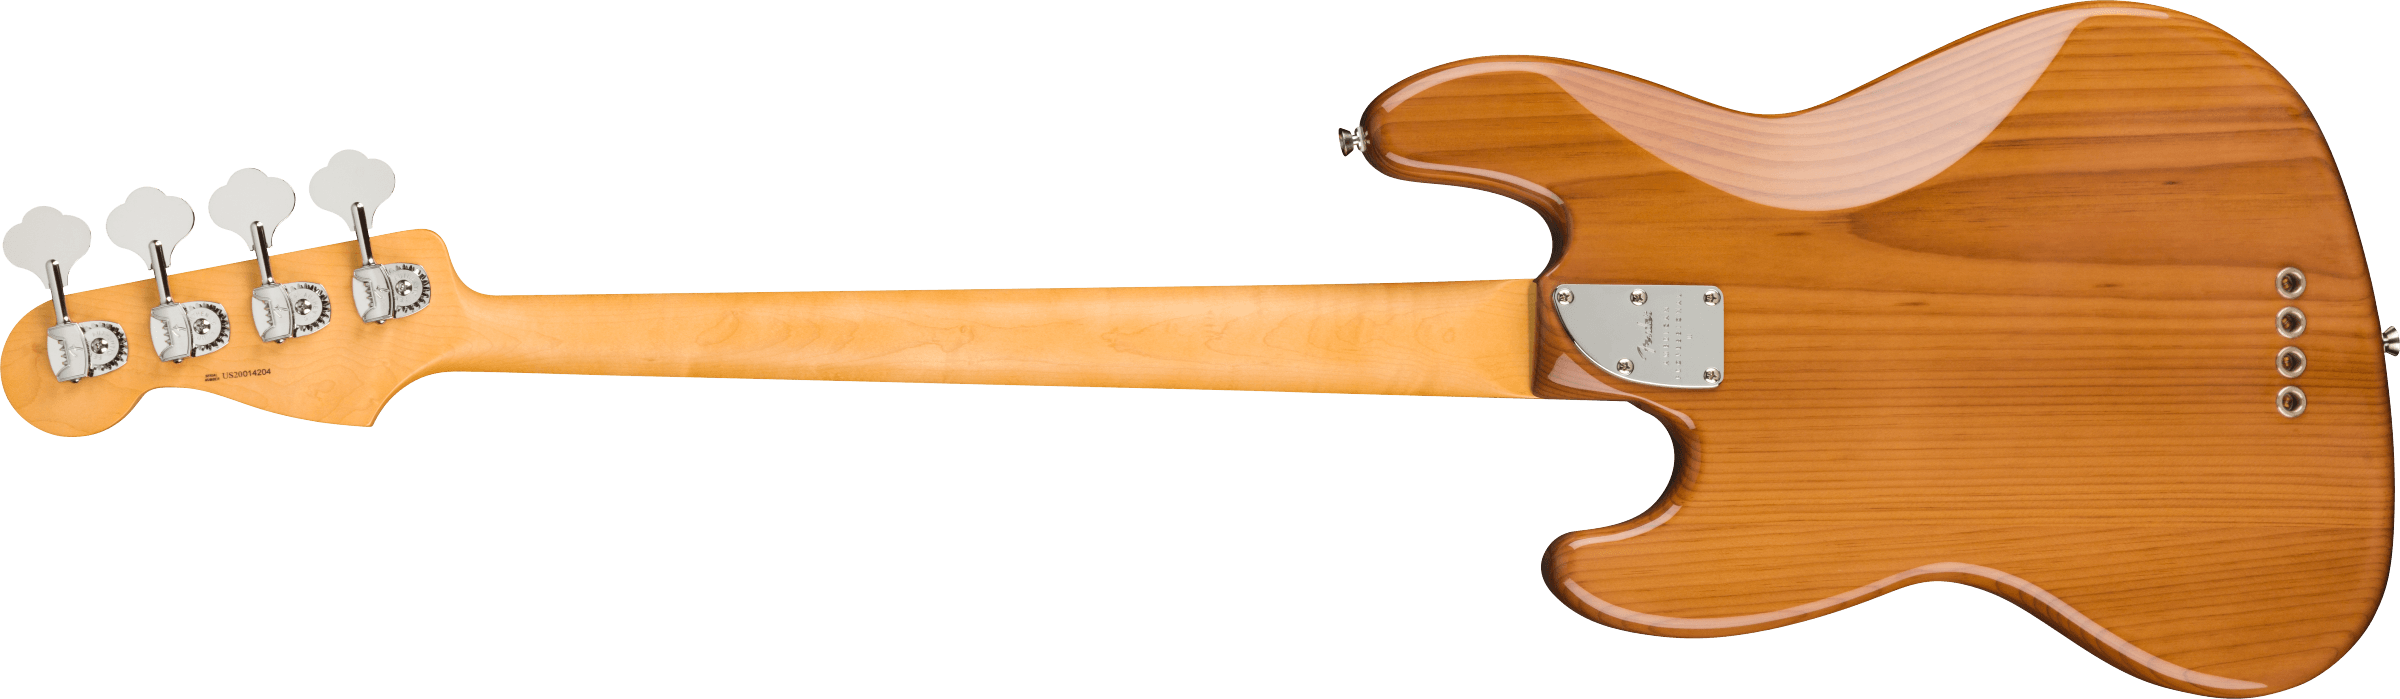 Fender American Professional II Jazz Bass Maple Fingerboard Roasted Pine W/ Case